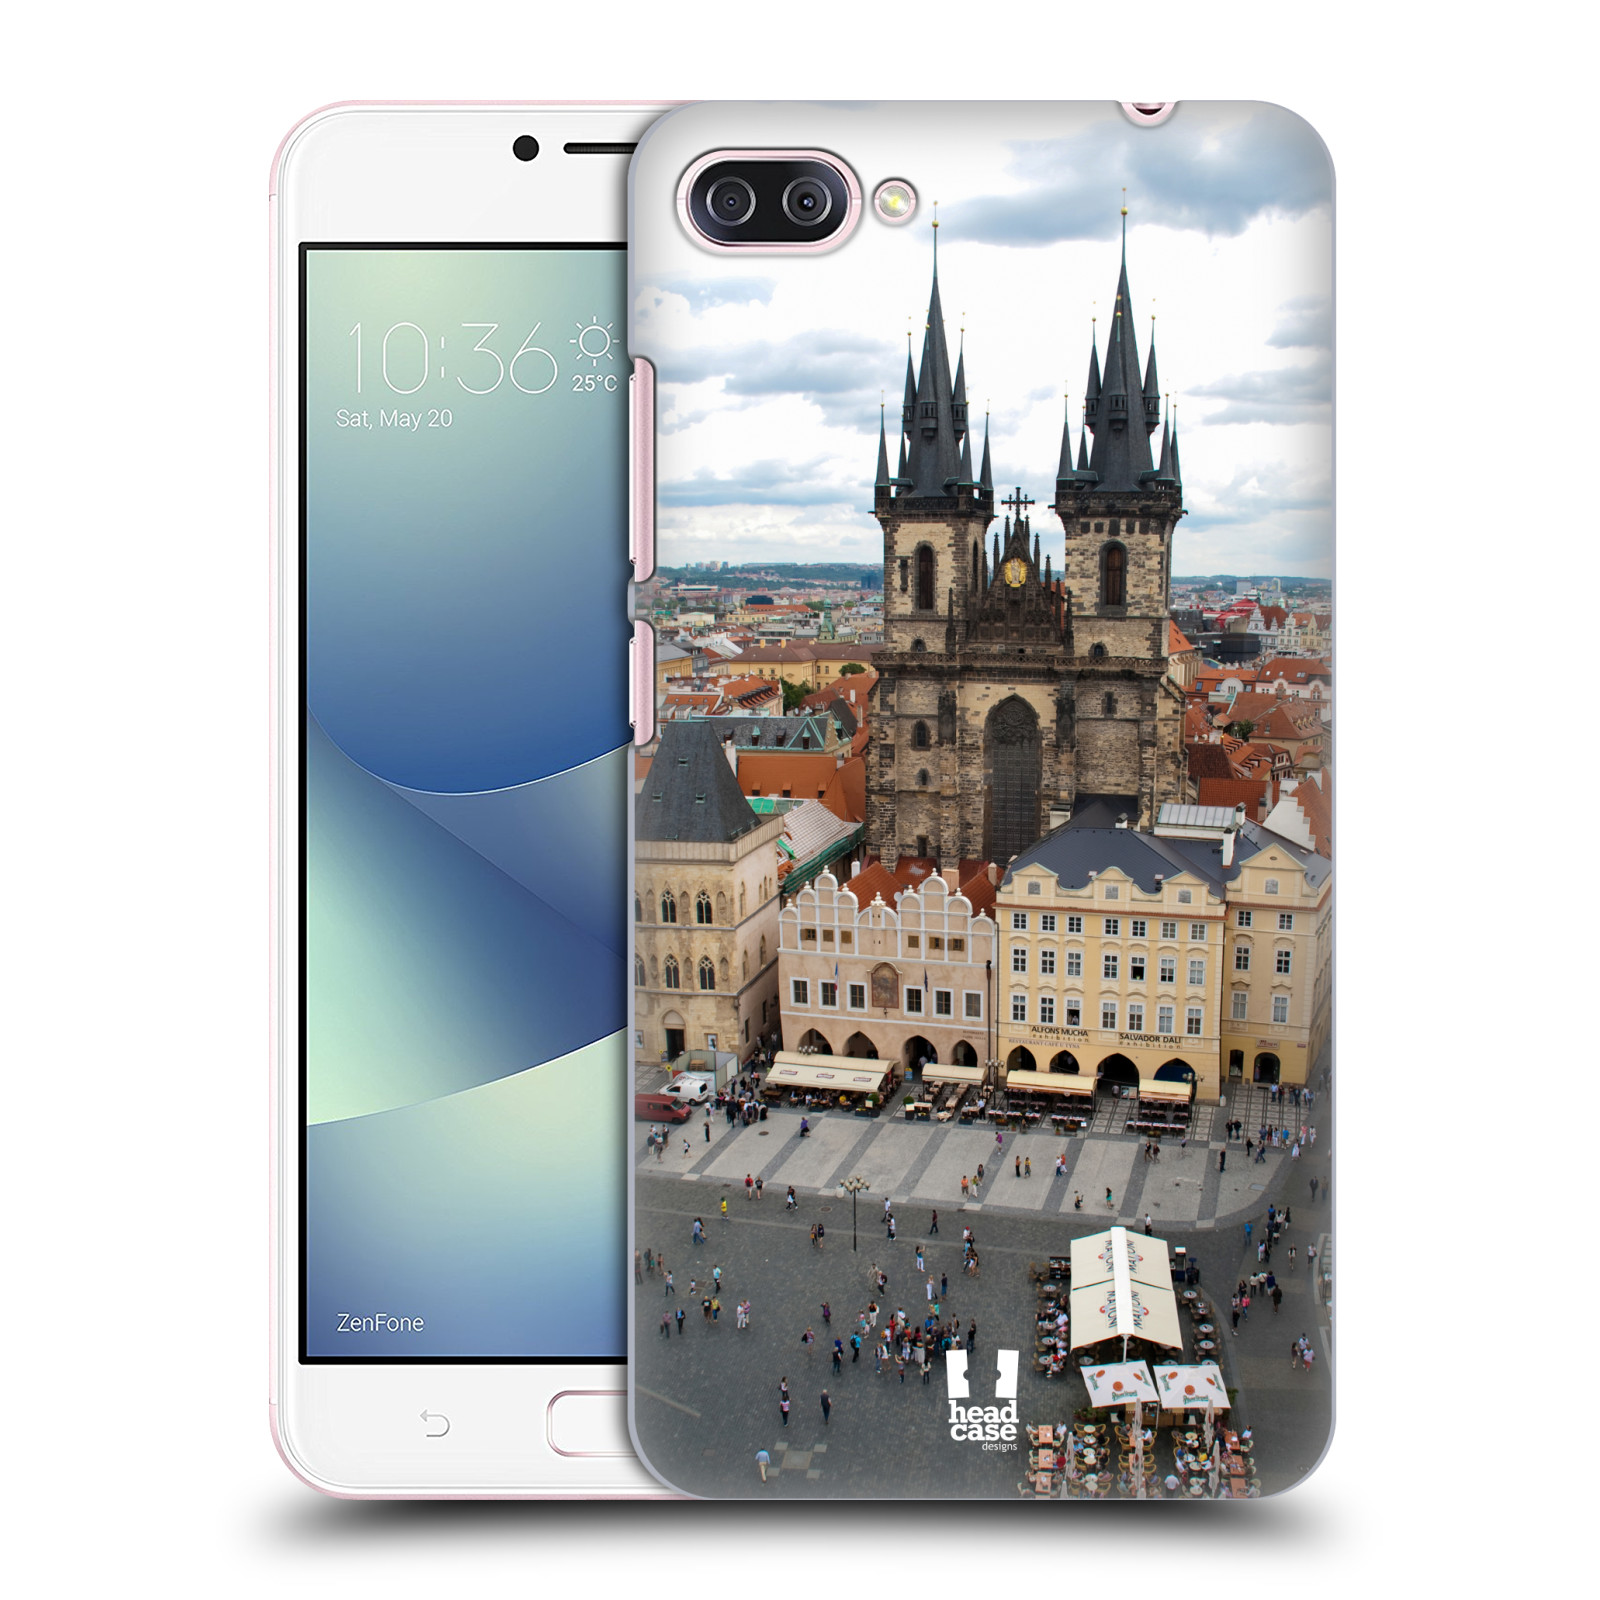 HEAD CASE plastový obal na mobil Asus Zenfone 4 MAX ZC554KL vzor Města foto náměstí ČESKÁ REPUBLIKA, PRAHA, STAROMĚSTSKÉ NÁMĚSTÍ